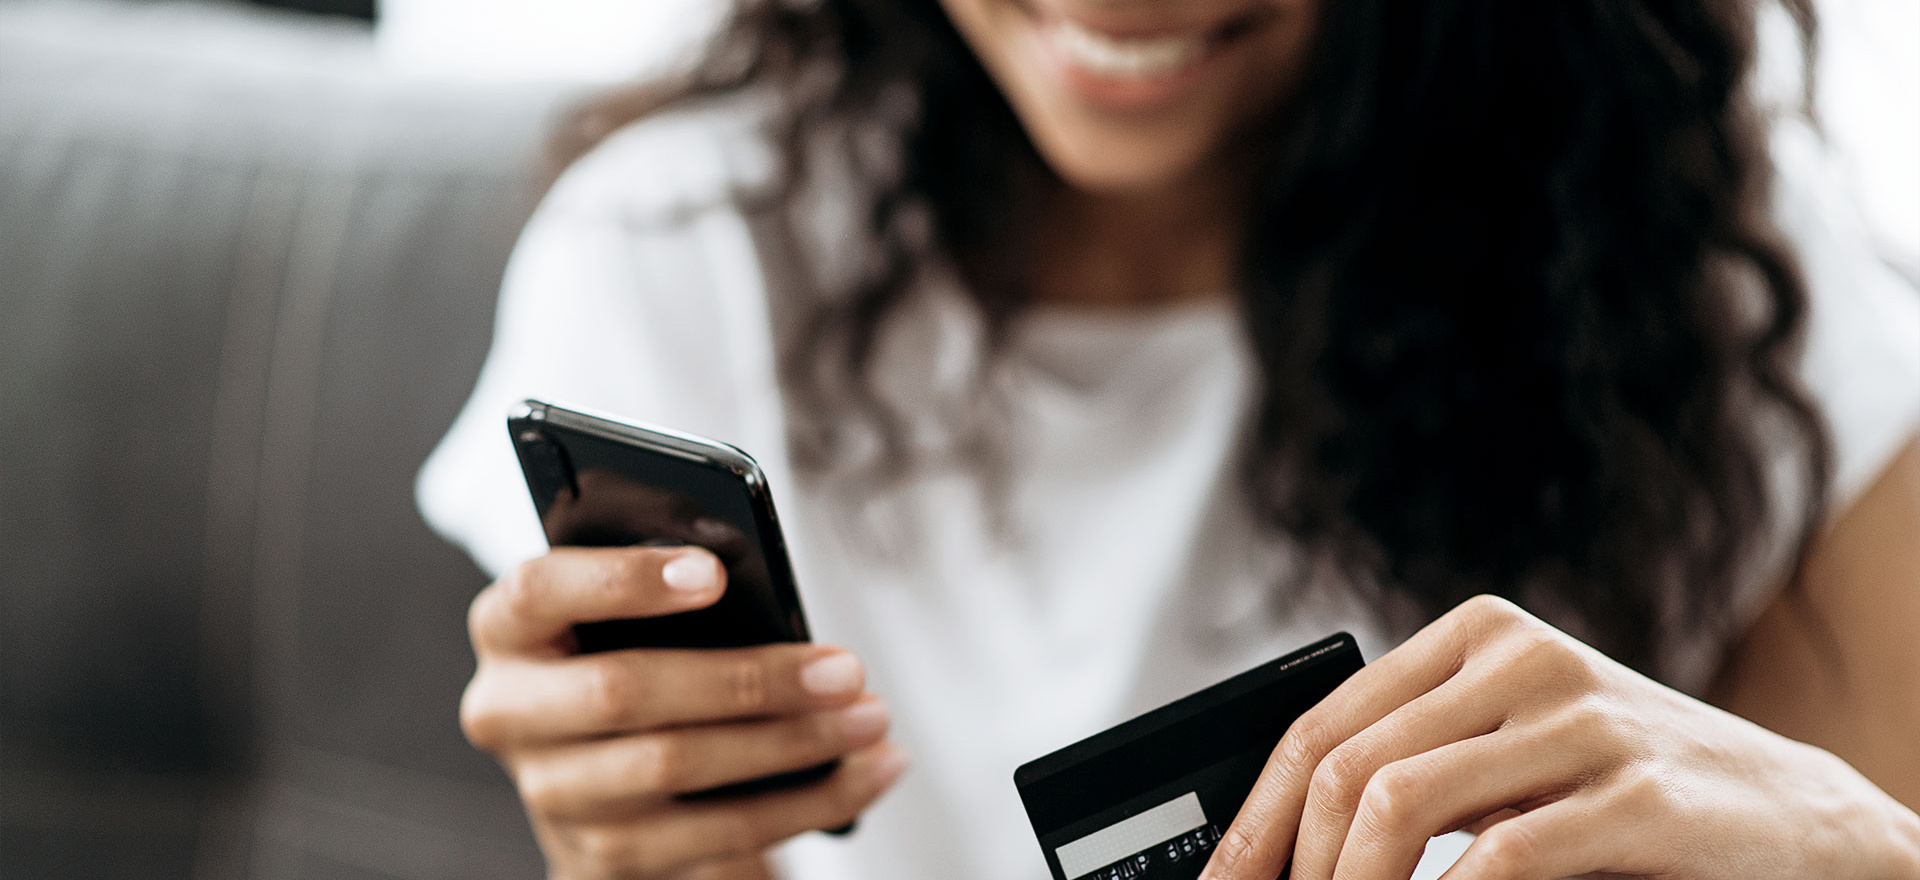 Frau gibt Kreditkartennummer im Onlineshop ein